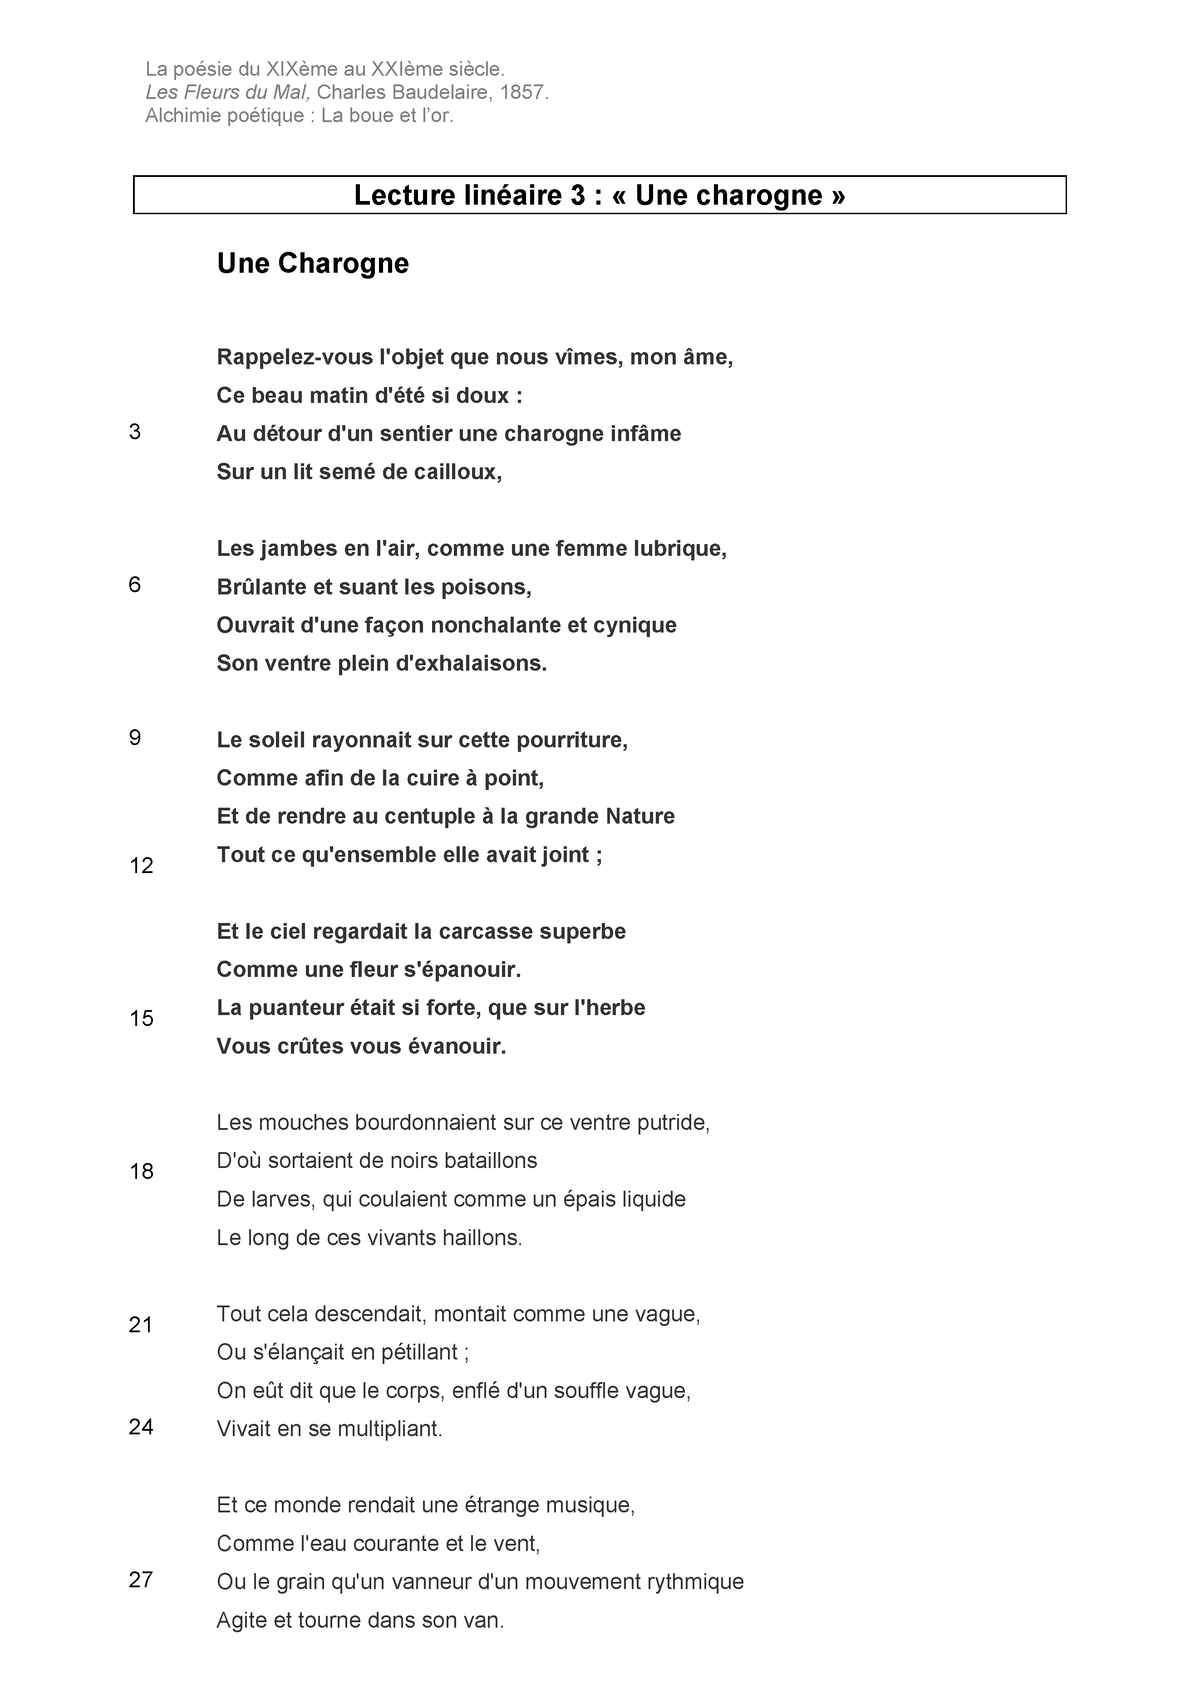 Texte Une charogne - Notes de cours 1,3-7, 10 - La poésie du XIXème au ...